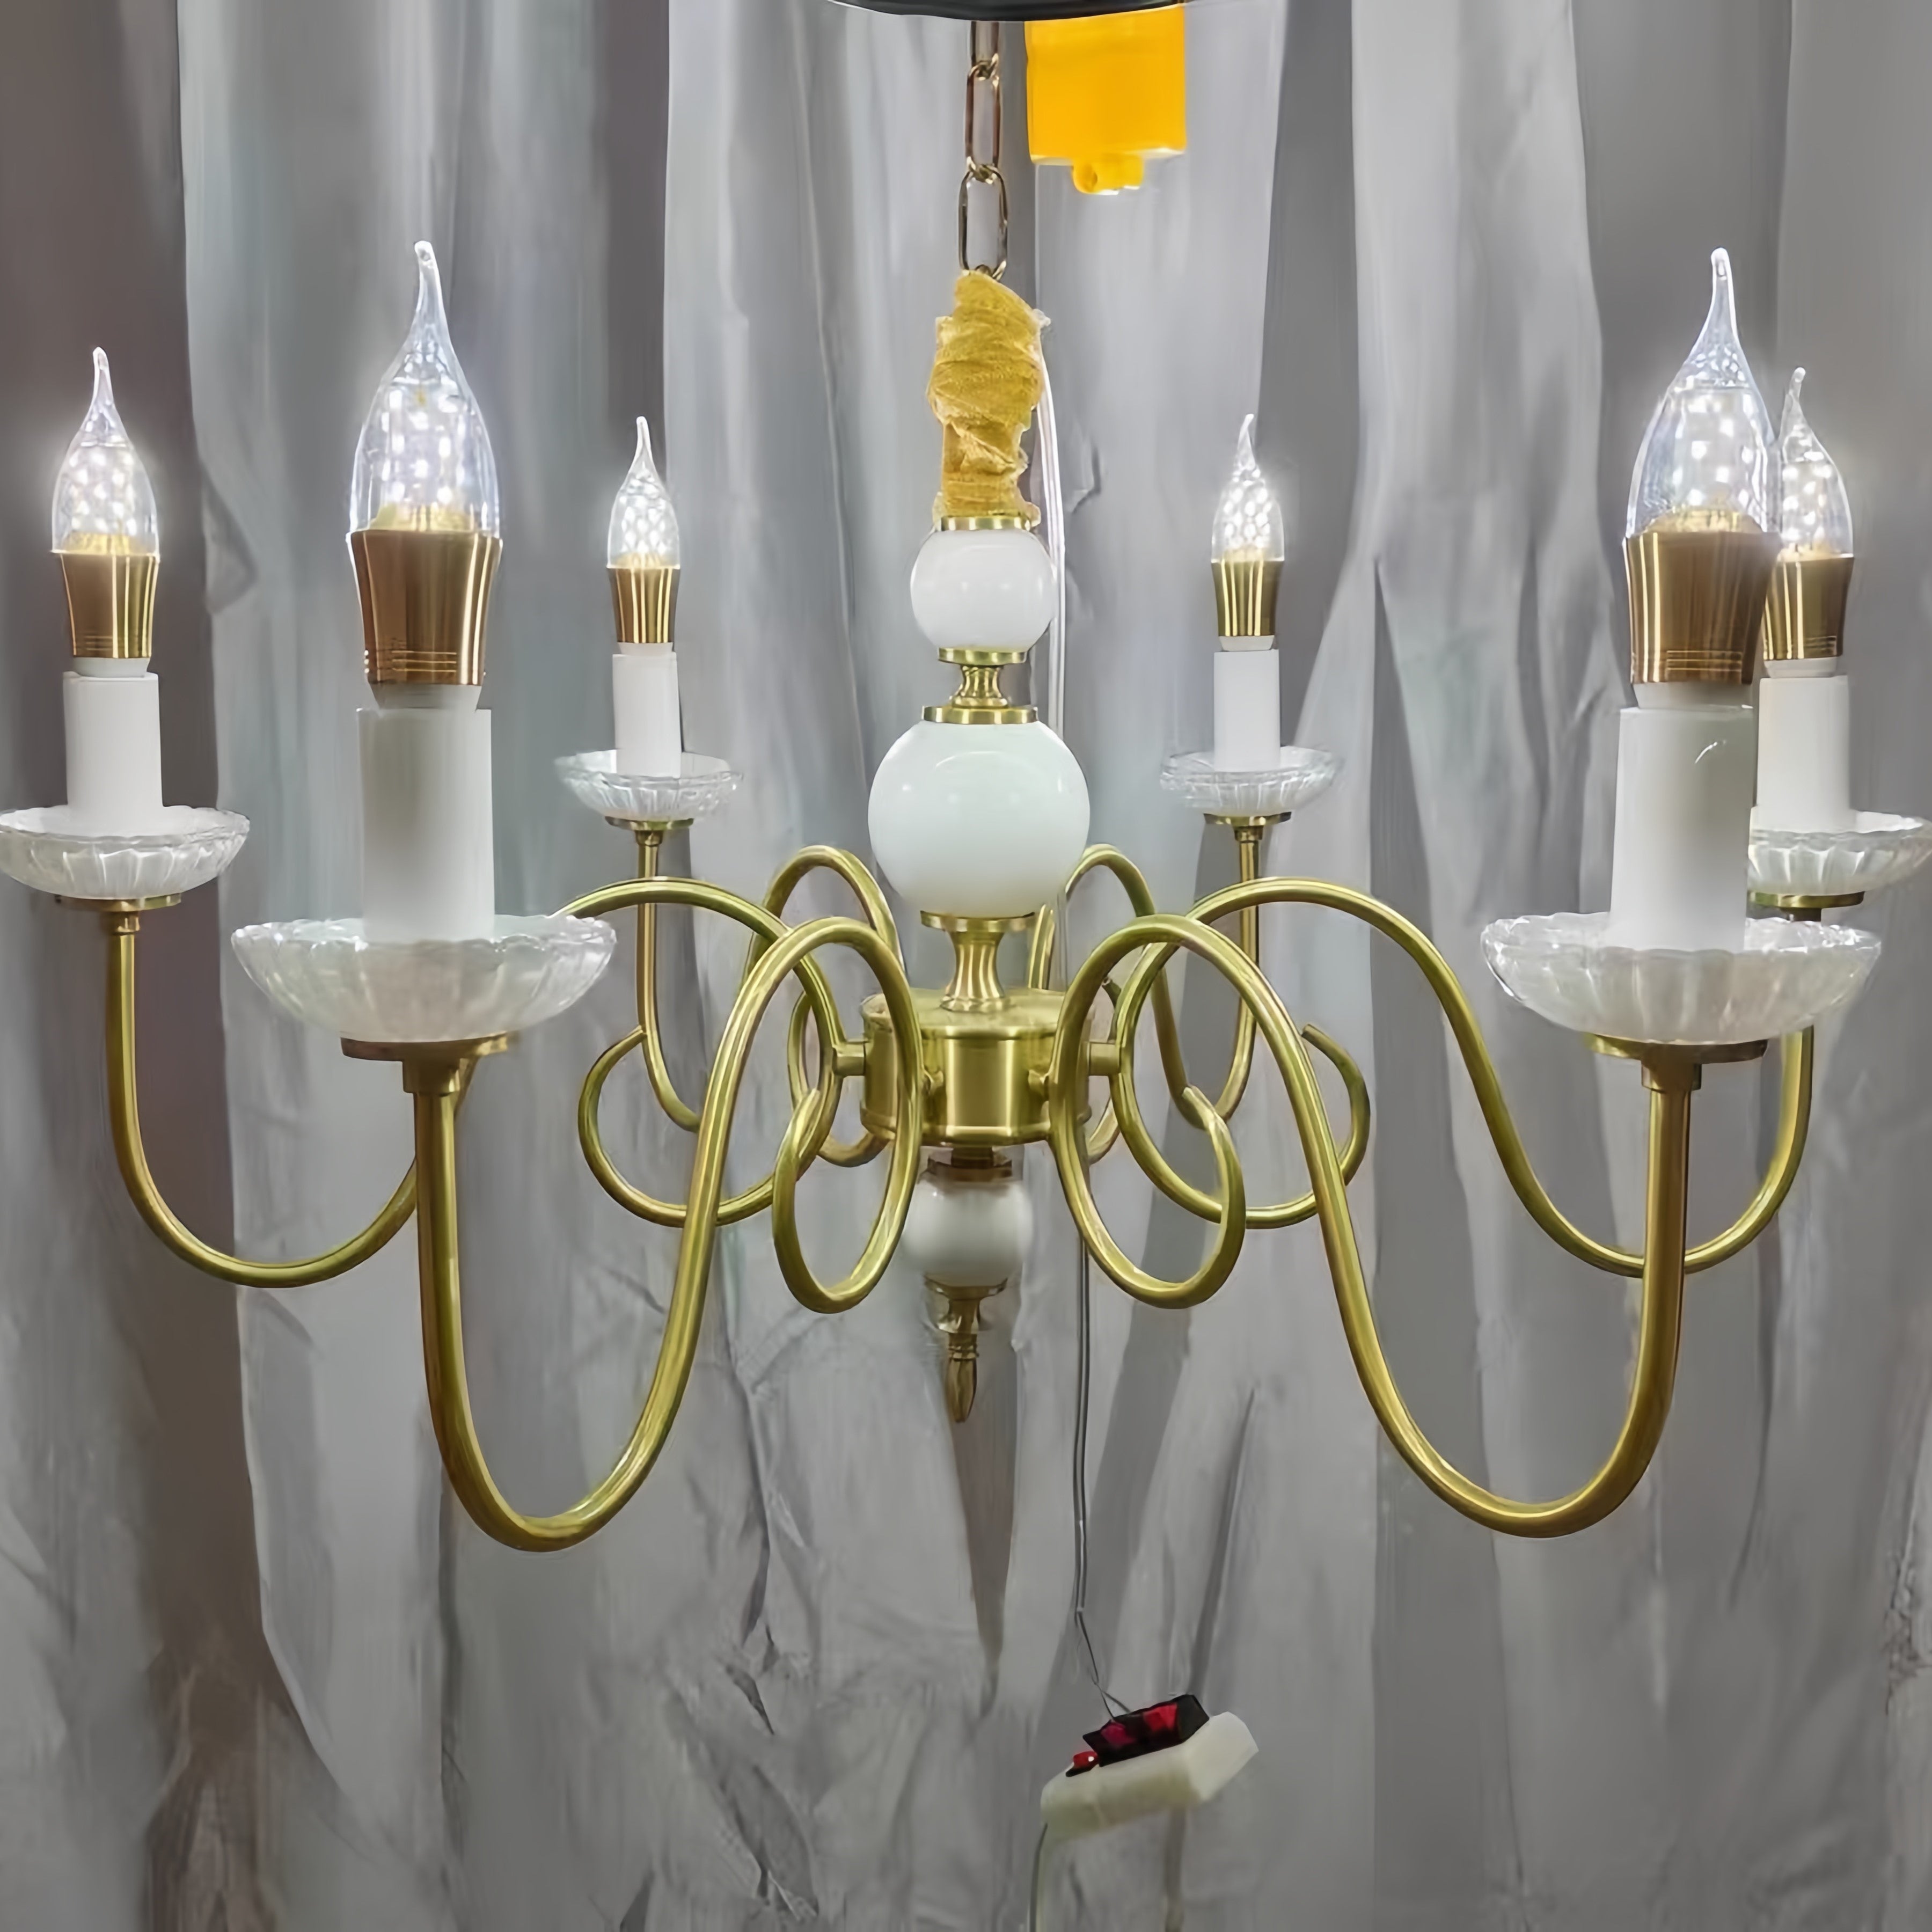 Silva Vintage LED Kerze Kronleuchter Keramik Schlafzimmer